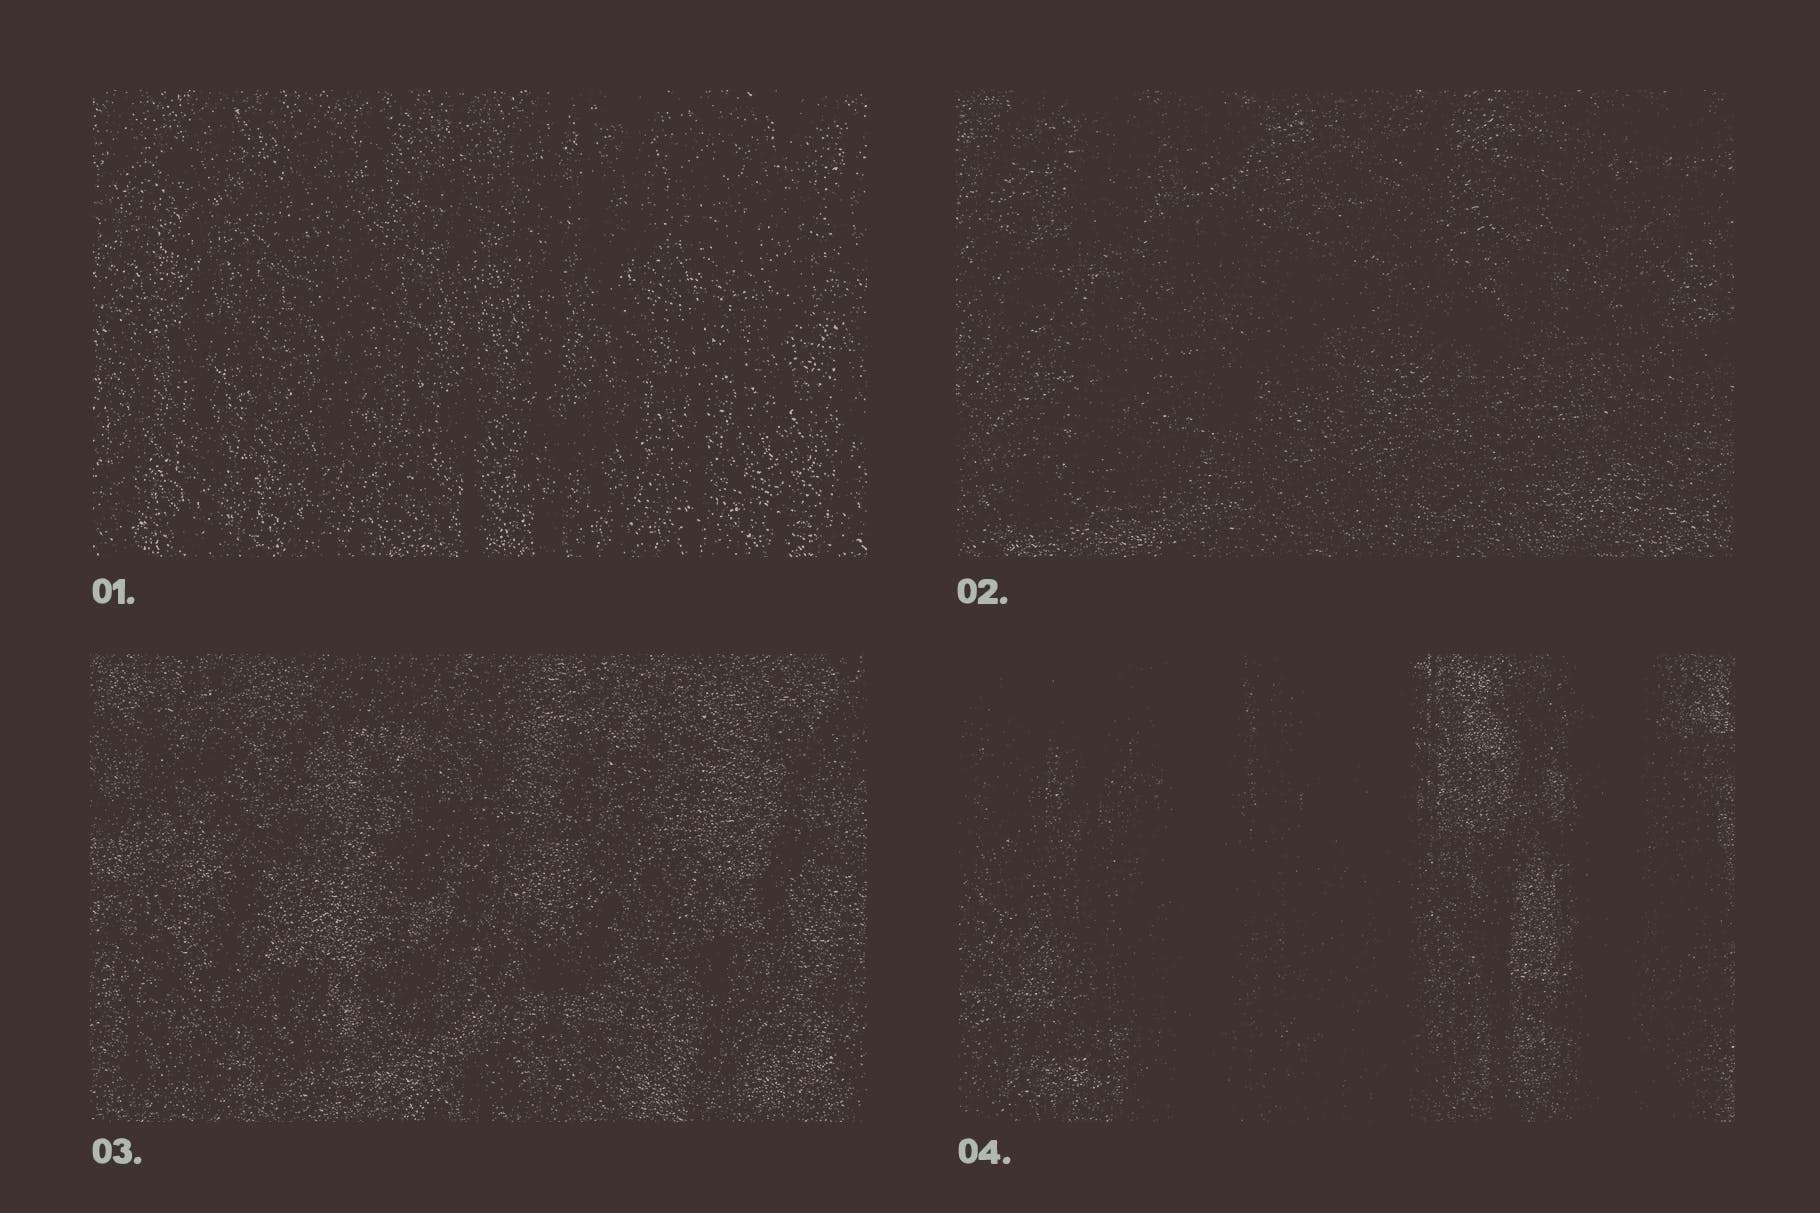 12个粒状磨砂效果矢量纹理背景素材 Vector Grainy Textures x12插图(2)